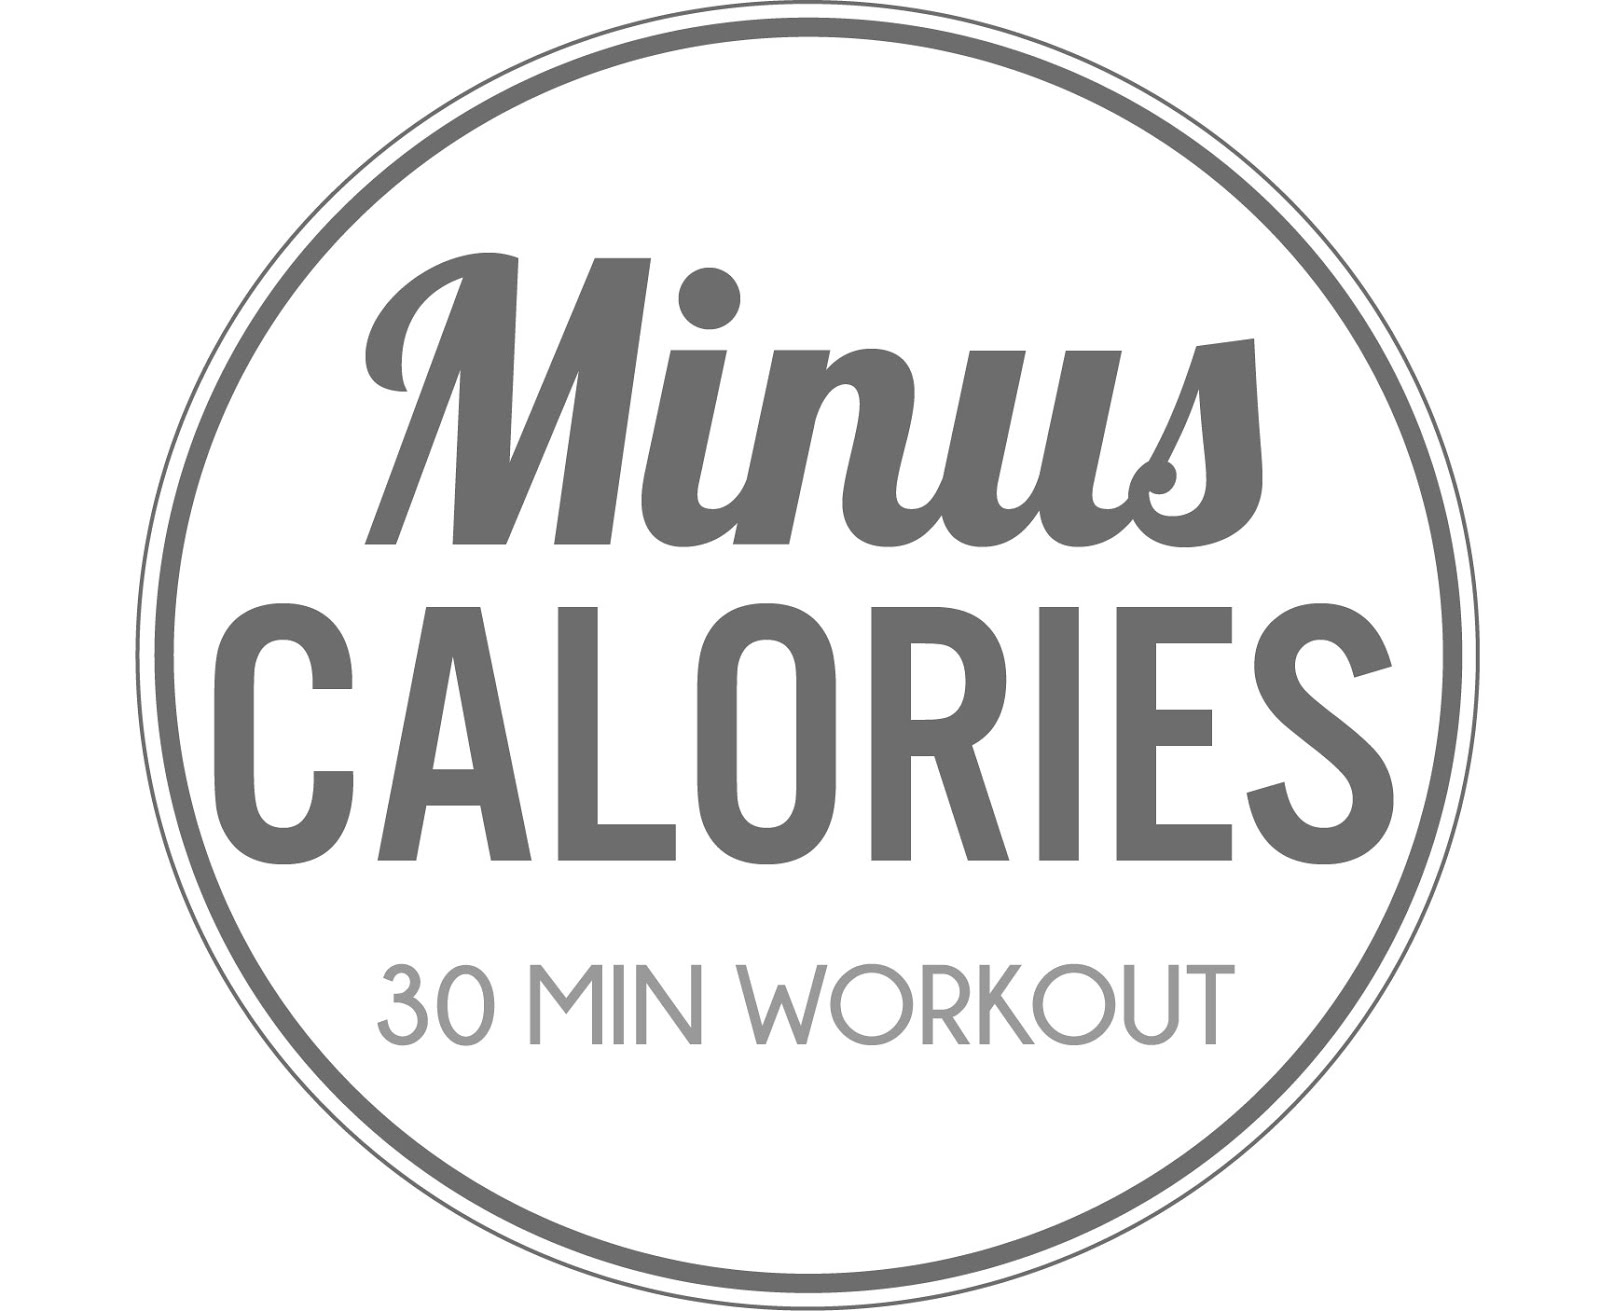 Minus Calories Workout